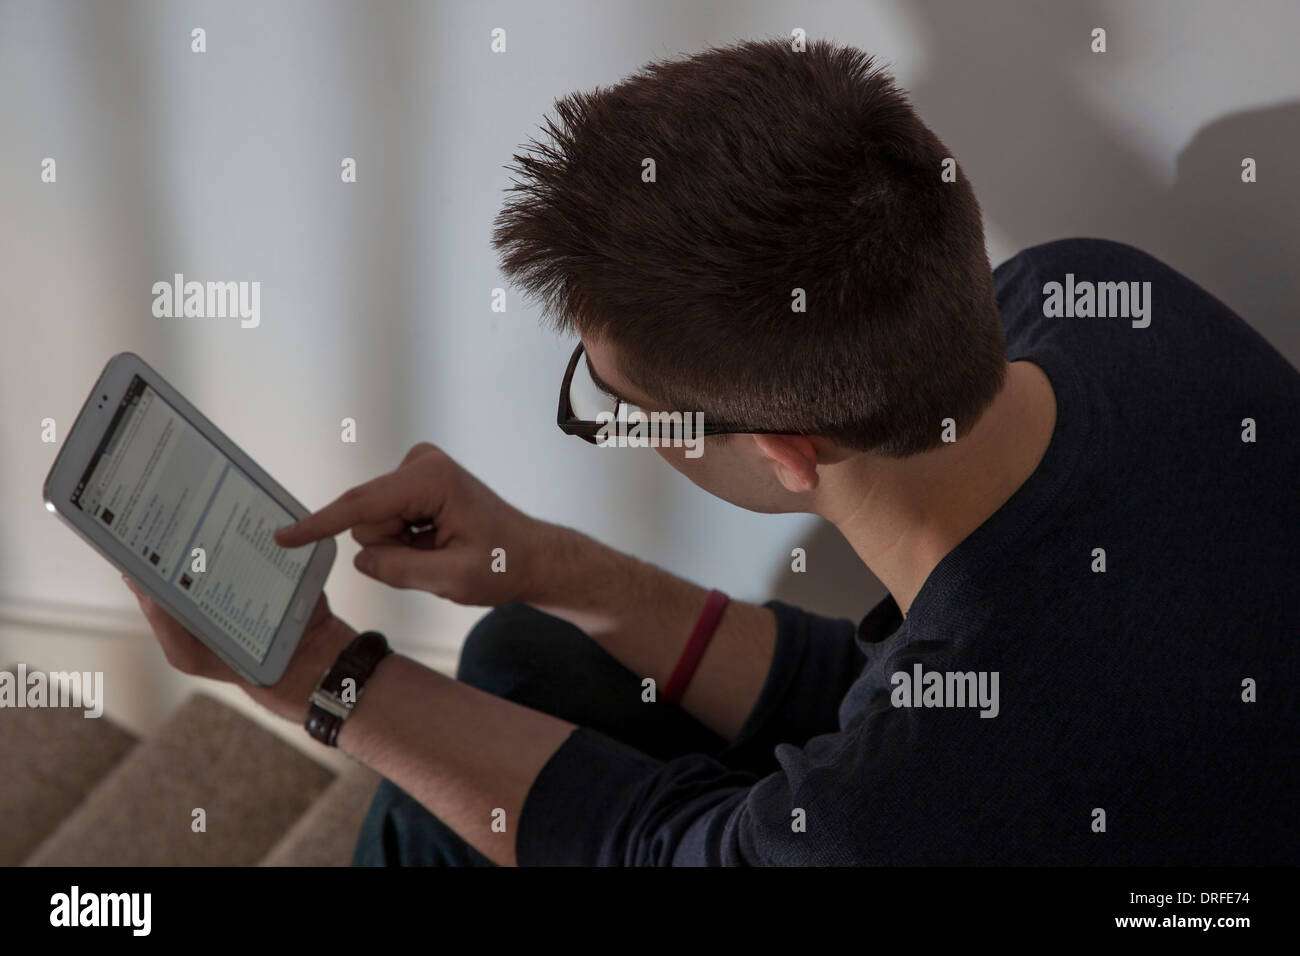 Über Schulter Schuss von Mann mit Brille betrachten eine networking-Website auf der Touch-Bildschirm digitale Tablet. Stockfoto